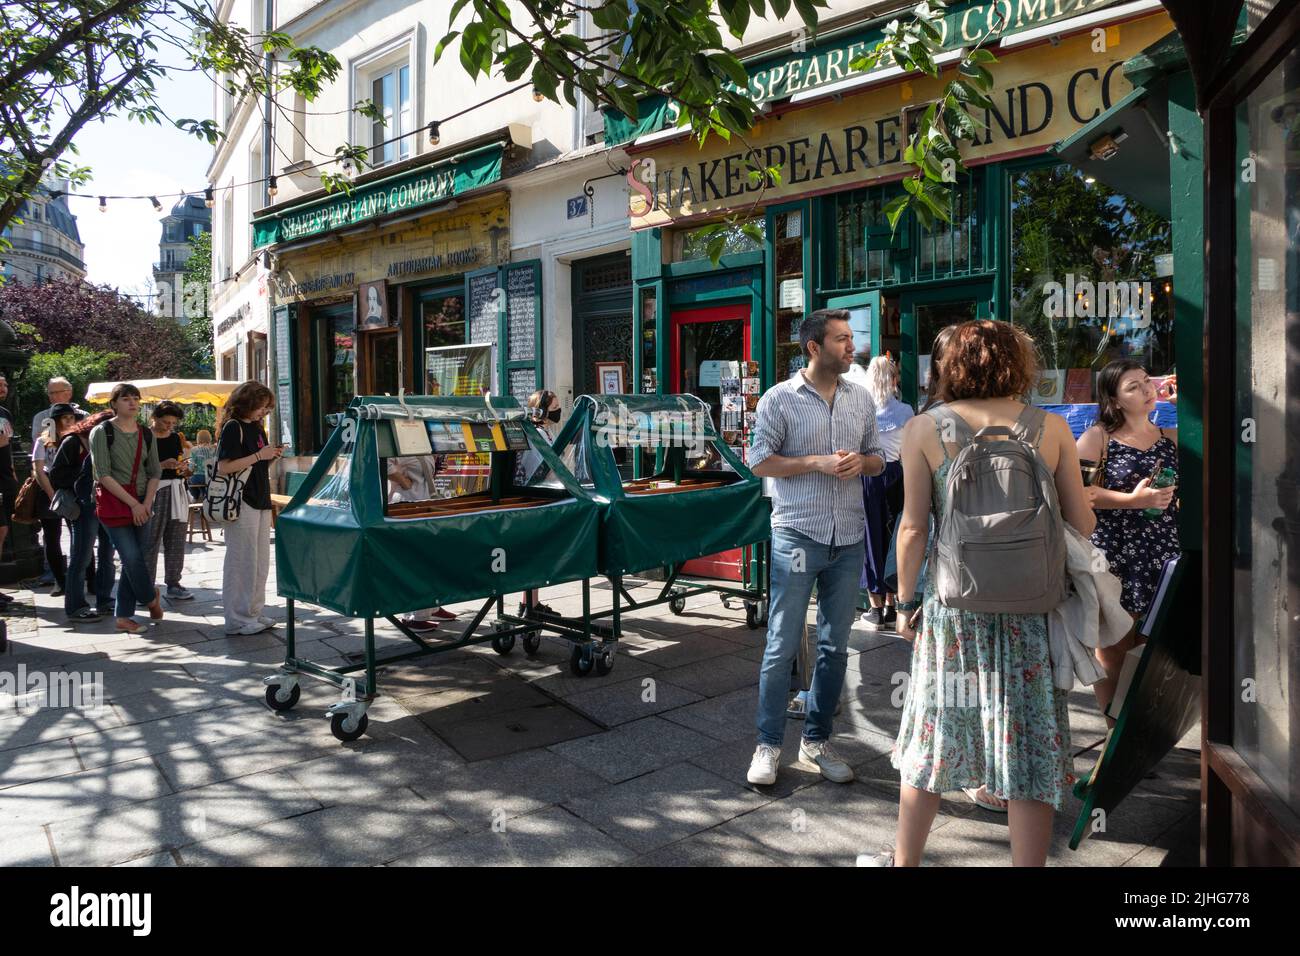 Shakespeare and Company ein legendärer englischsprachiger Buchladen am linken seine-Ufer in Paris, Frankreich Stockfoto